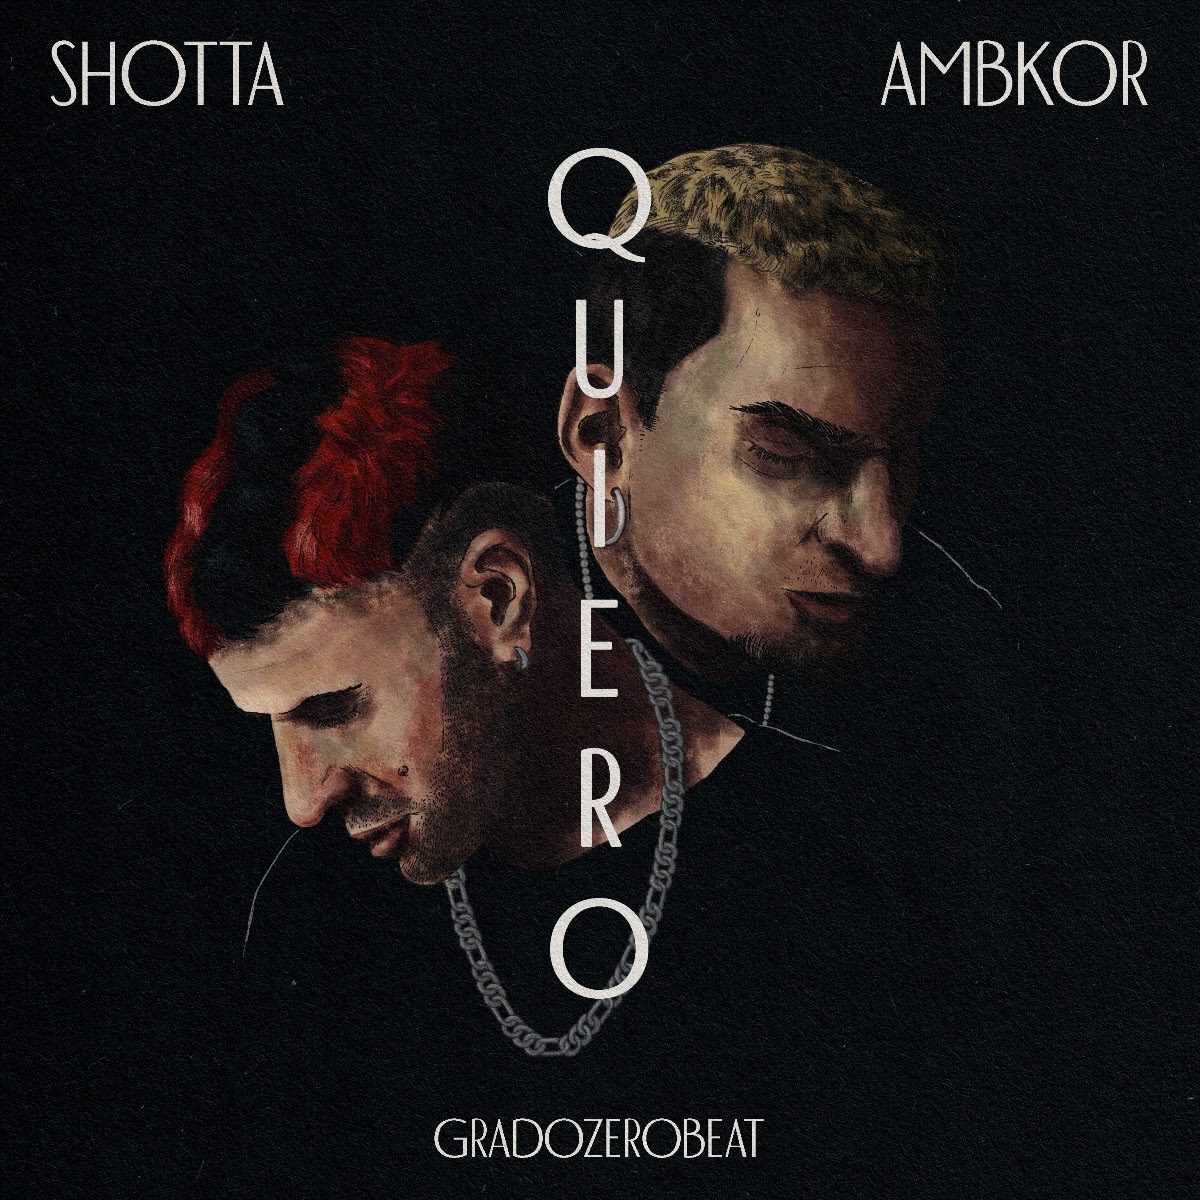 Nuevo vídeo de Shotta y Ambkor Recibidos